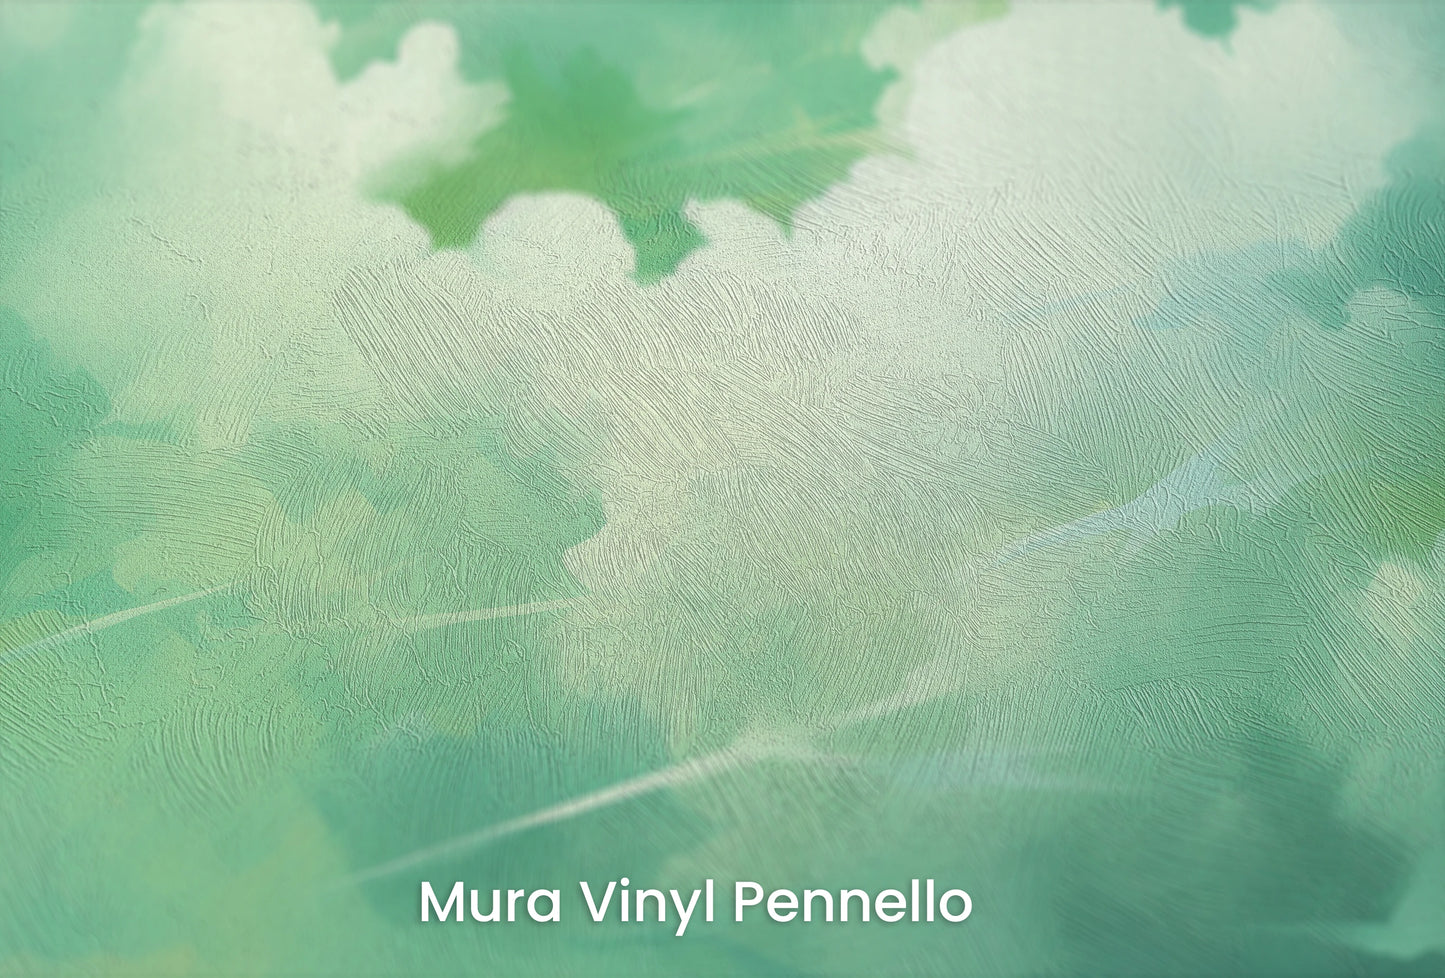 Zbliżenie na artystyczną fototapetę o nazwie Emerald Breath na podłożu Mura Vinyl Pennello - faktura pociągnięć pędzla malarskiego.